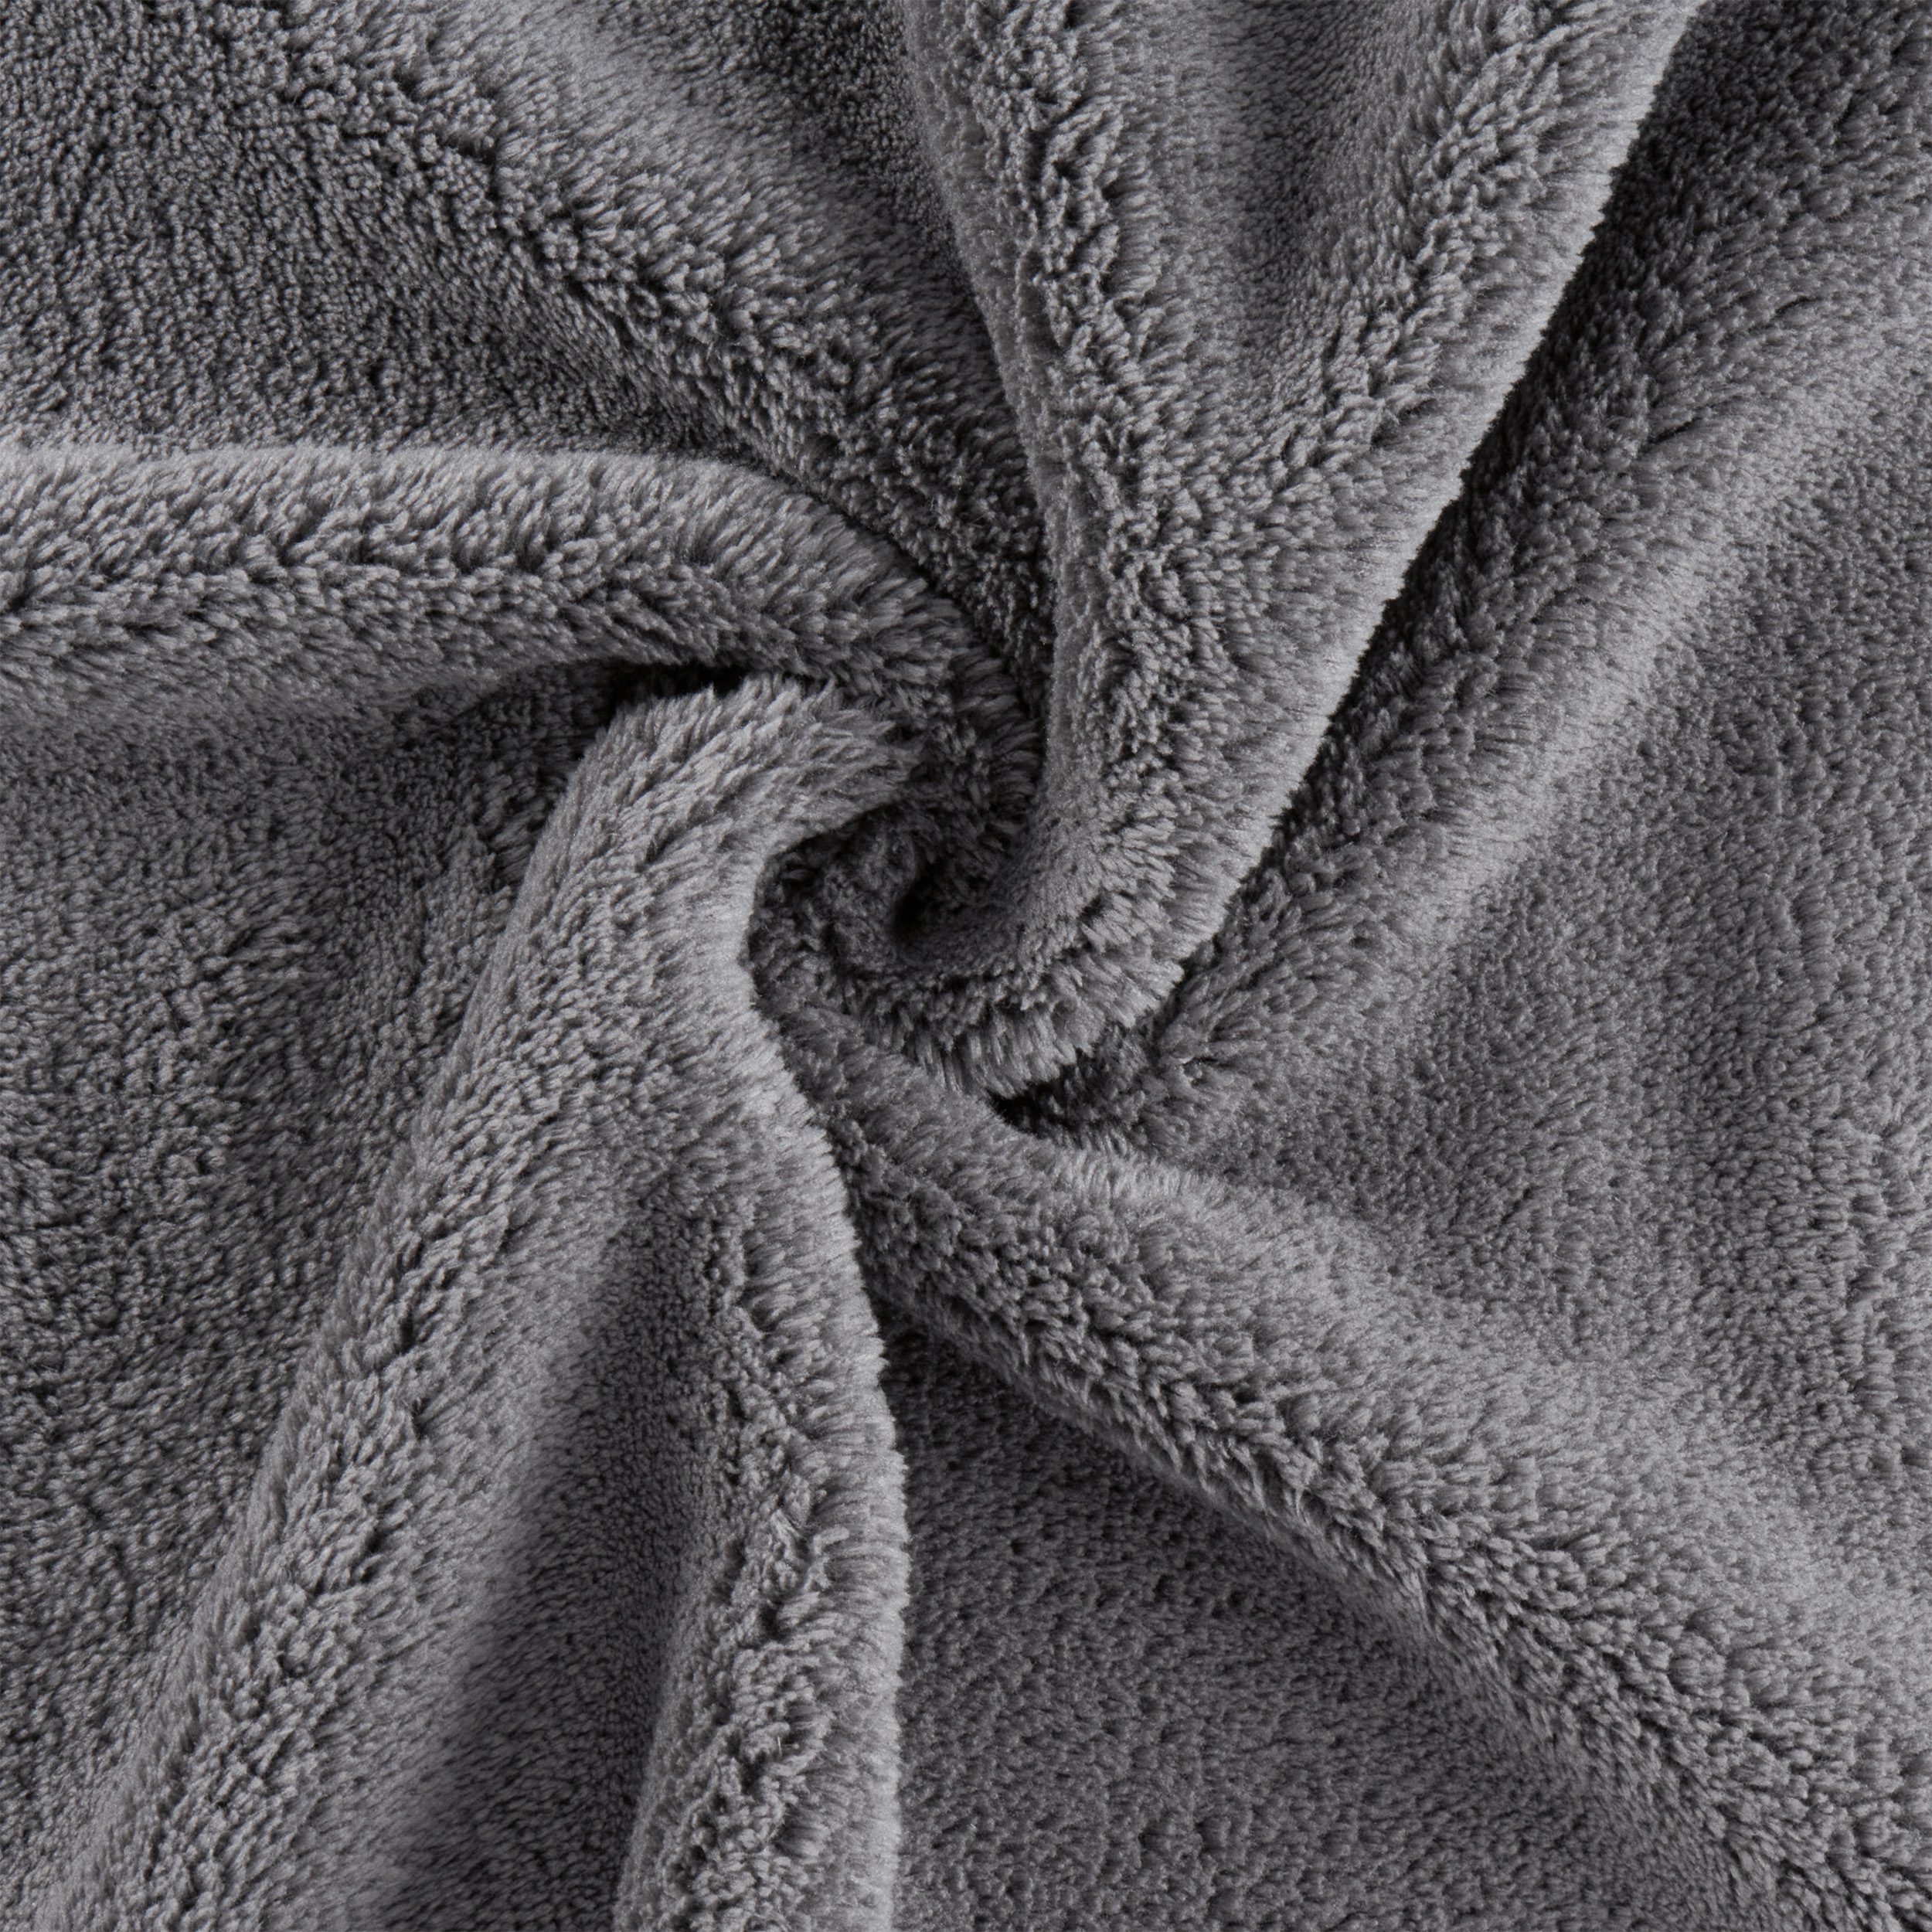 Bleach-Resistant Coral Fleece Salon Towels – Monarch Brands